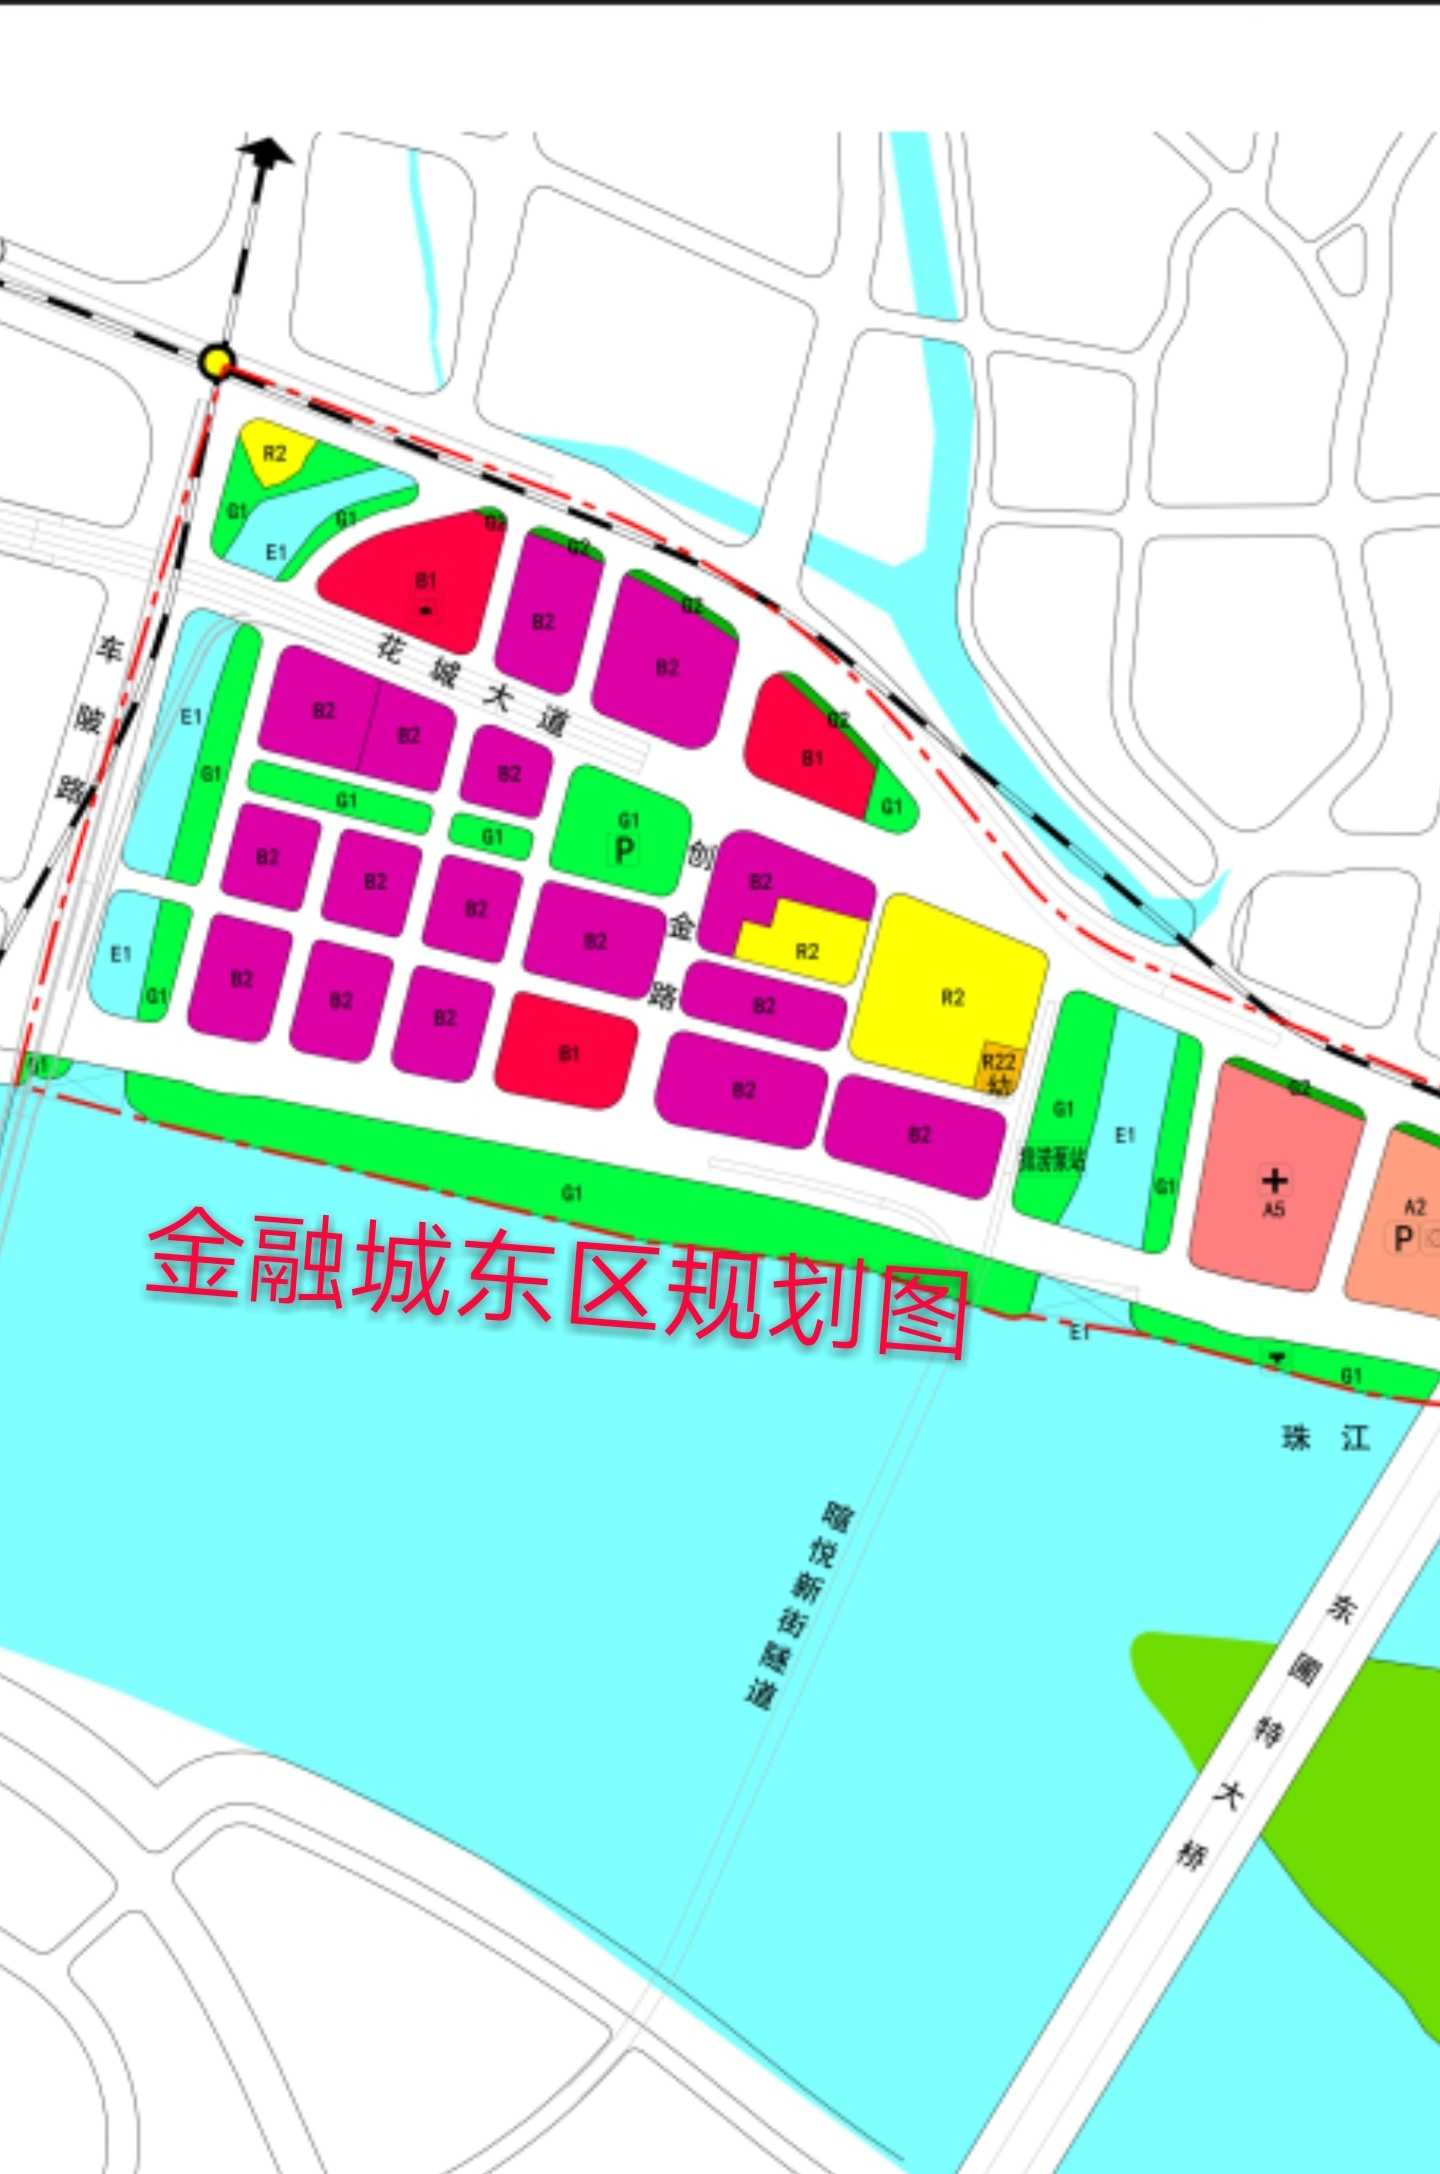 结合卫星图及金融城东区规划图看(如下)浪奇地块可兴建5～6栋大厦,该